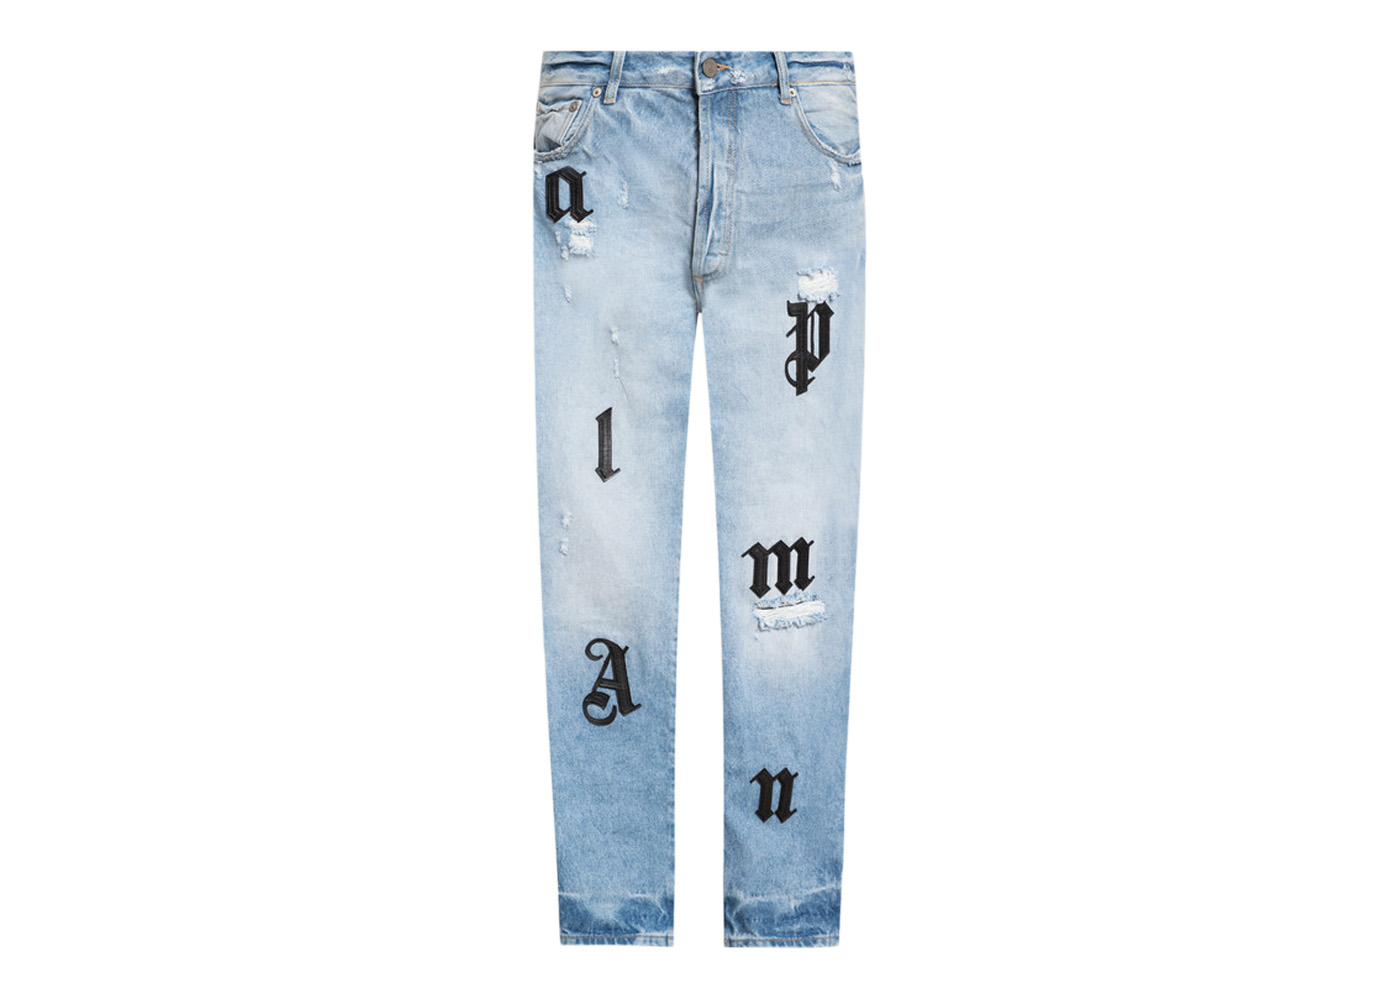 Top more than 159 denim jeans logo super hot